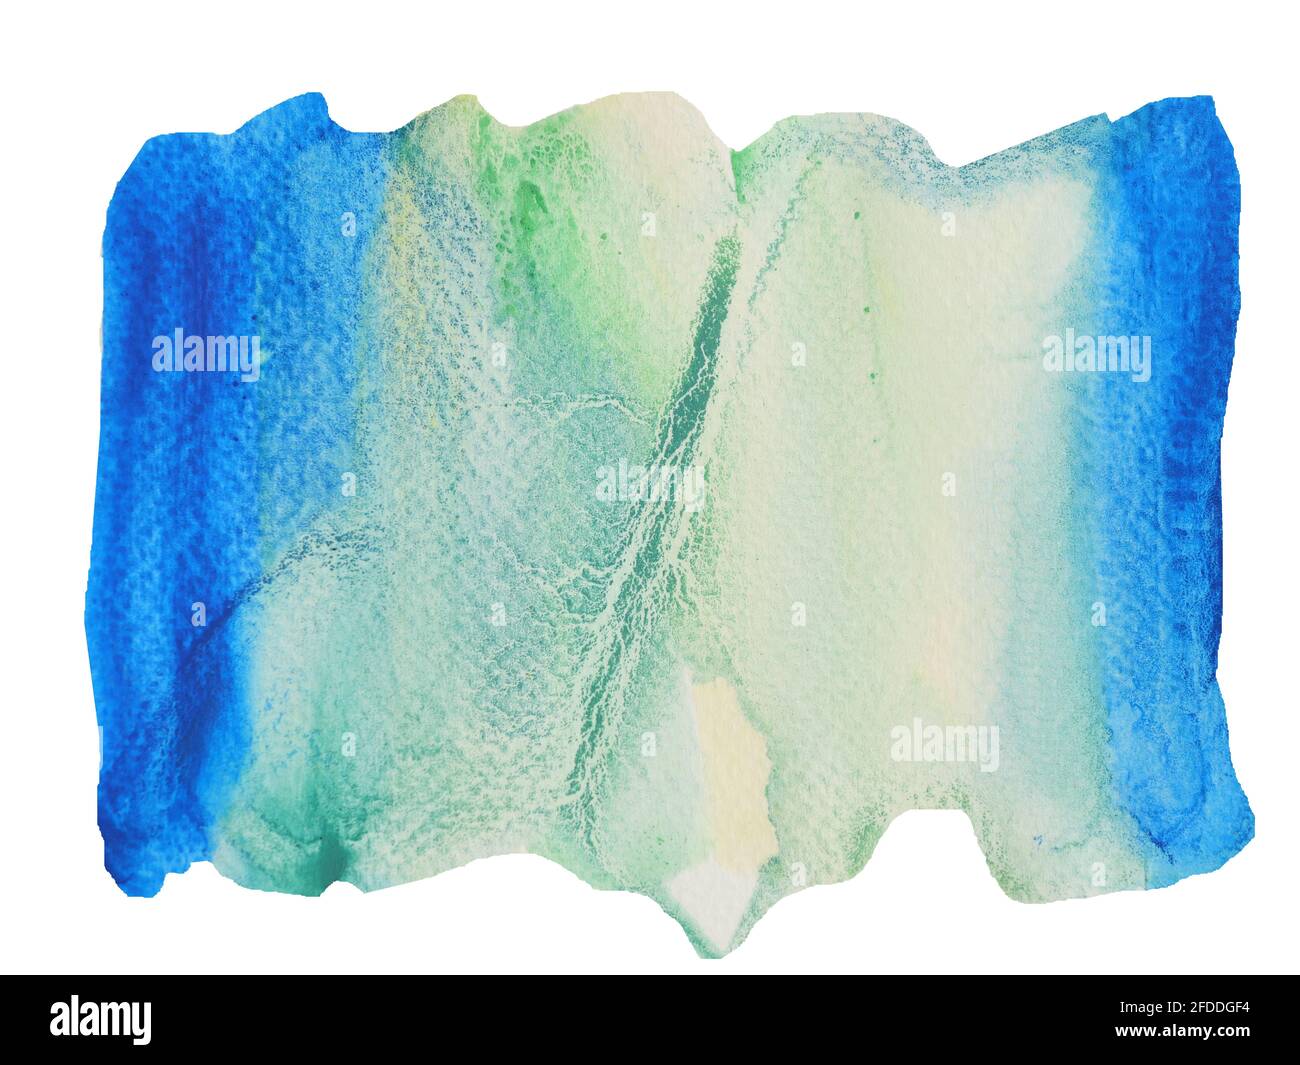 Farbverlauf von blau bis grün auf weißer Oberfläche, Illustration abstrakter und heller Hintergrund aus Aquarell-Handzeichnungen auf Papier Stockfoto